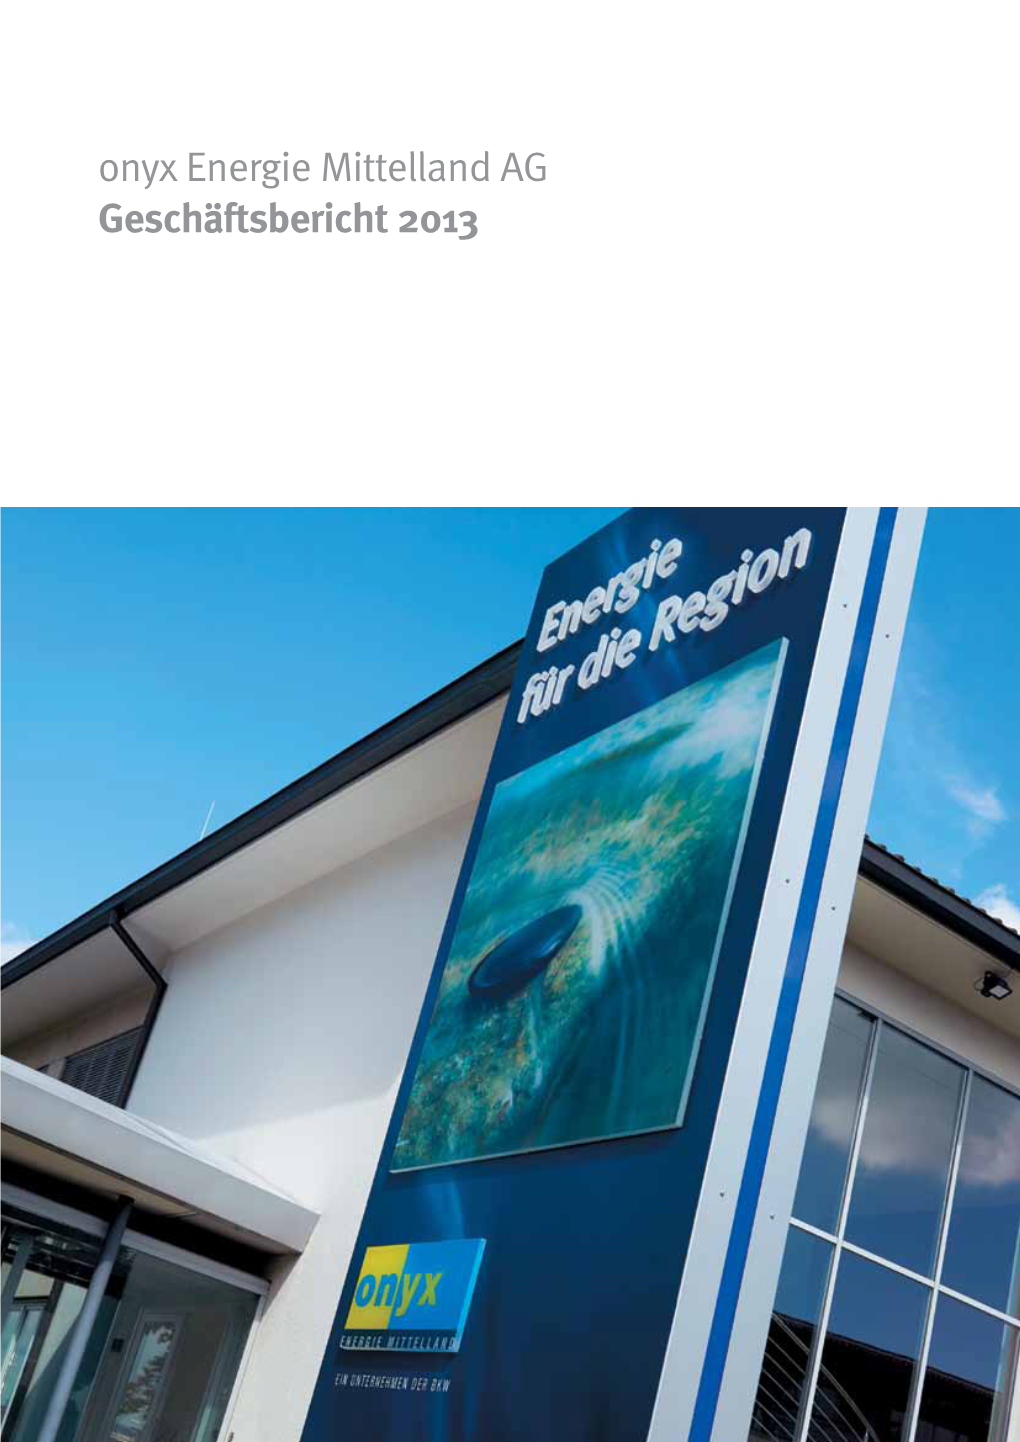 Onyx Energie Mittelland AG Geschäftsbericht 2013 Inhalt